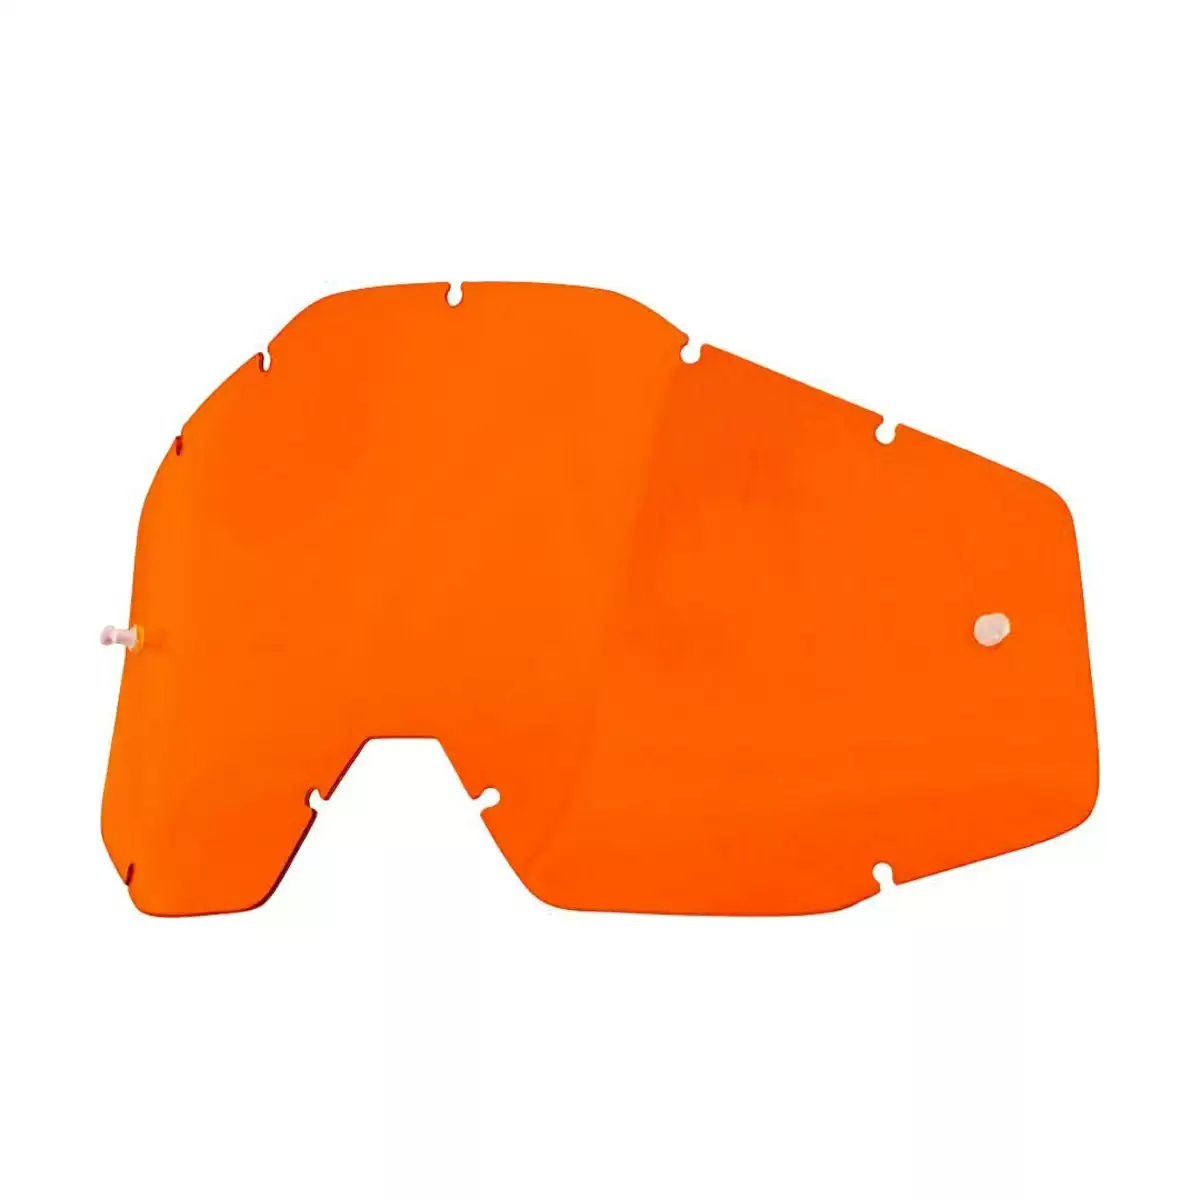 Linsenersatz orange für Racecraft, Accuri e Strata - image